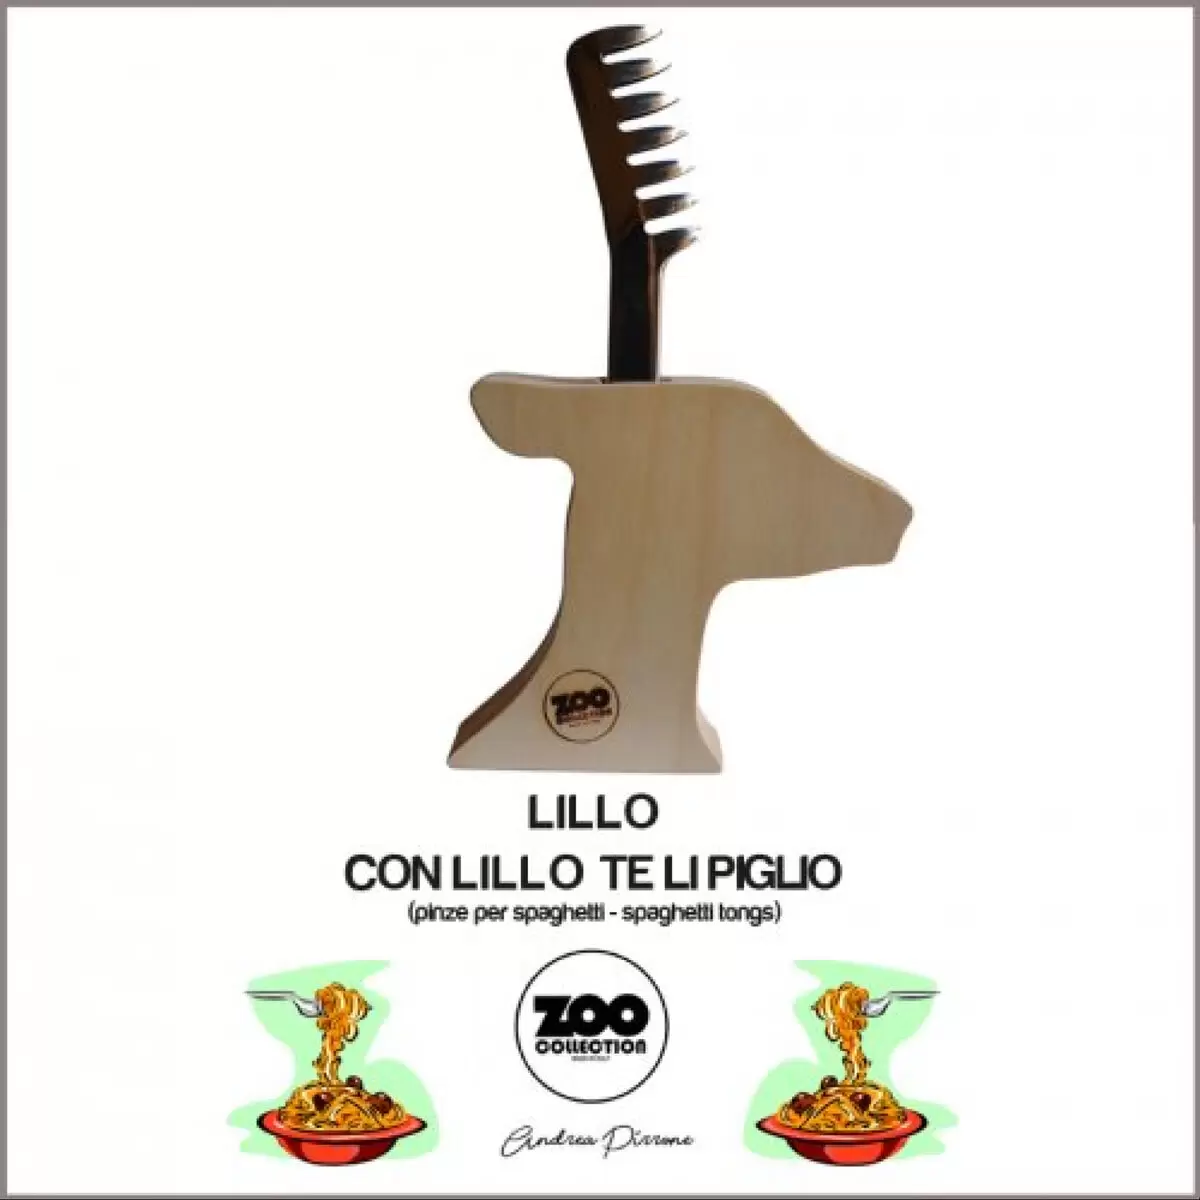 Lillo (pinze per spaghetti)